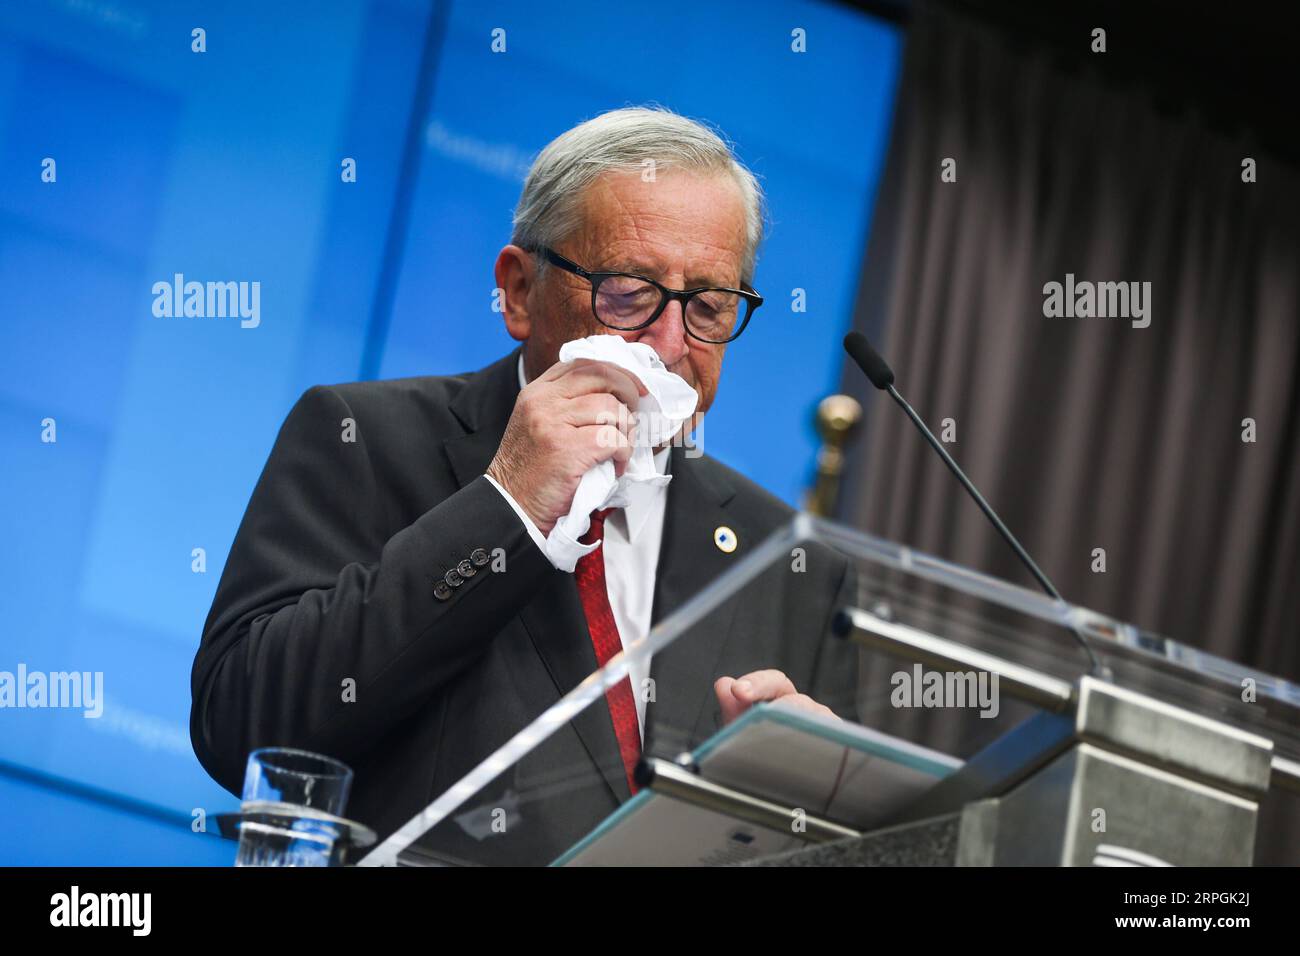 191017 -- BRUXELLES, le 17 octobre 2019 -- le président de la Commission européenne, Jean-Claude Juncker, assiste à une conférence de presse lors d'un sommet de l'UE à Bruxelles, en Belgique, le 17 octobre 2019. Le sommet de deux jours a débuté jeudi. L'Union européenne l'UE et la Grande-Bretagne ont conclu un nouvel accord sur le Brexit, a déclaré jeudi le président de la Commission européenne Jean-Claude Juncker. BELGIQUE-BRUXELLES-UE-SOMMET-NOUVEL ACCORD SUR LE BREXIT ZHENGXHUANSONG PUBLICATIONXNOTXINXCHN Banque D'Images